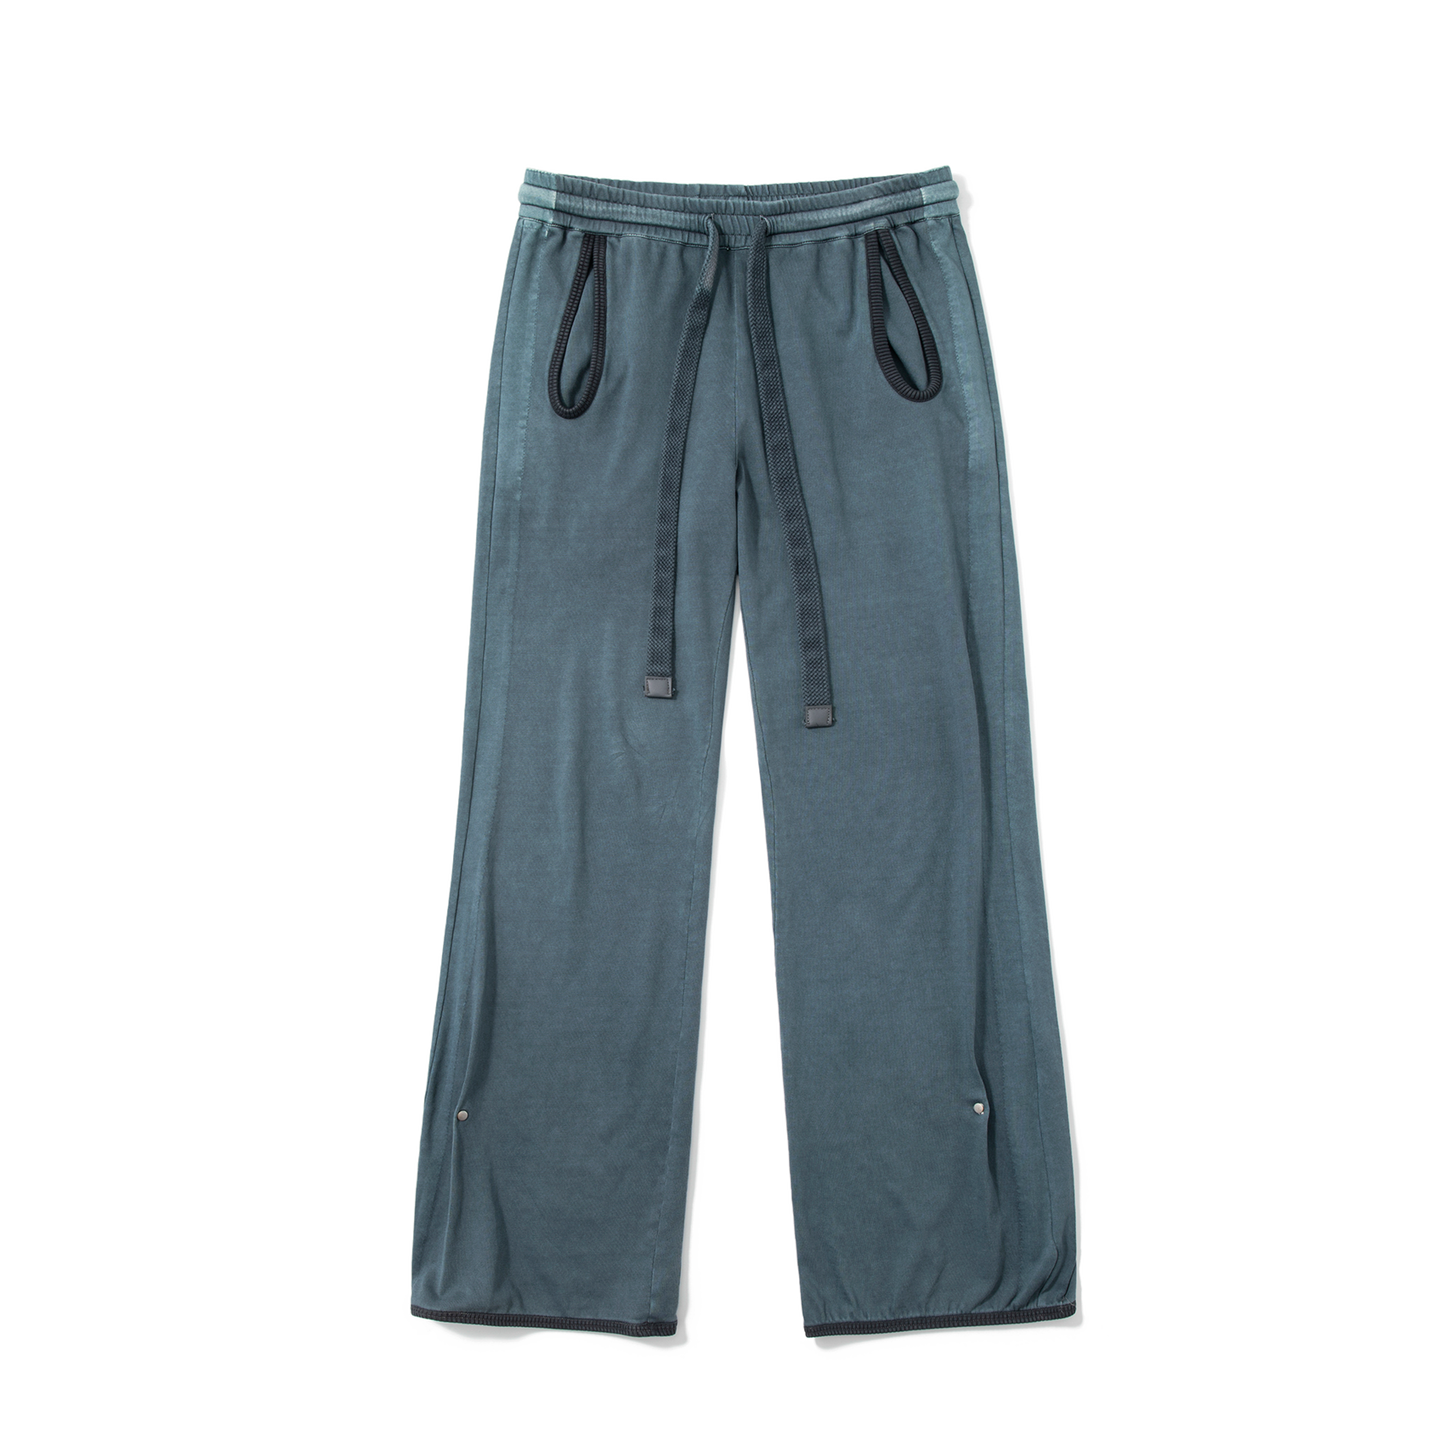 KILLWHY·Craft Sweatpants “旧洗复古睡裤”